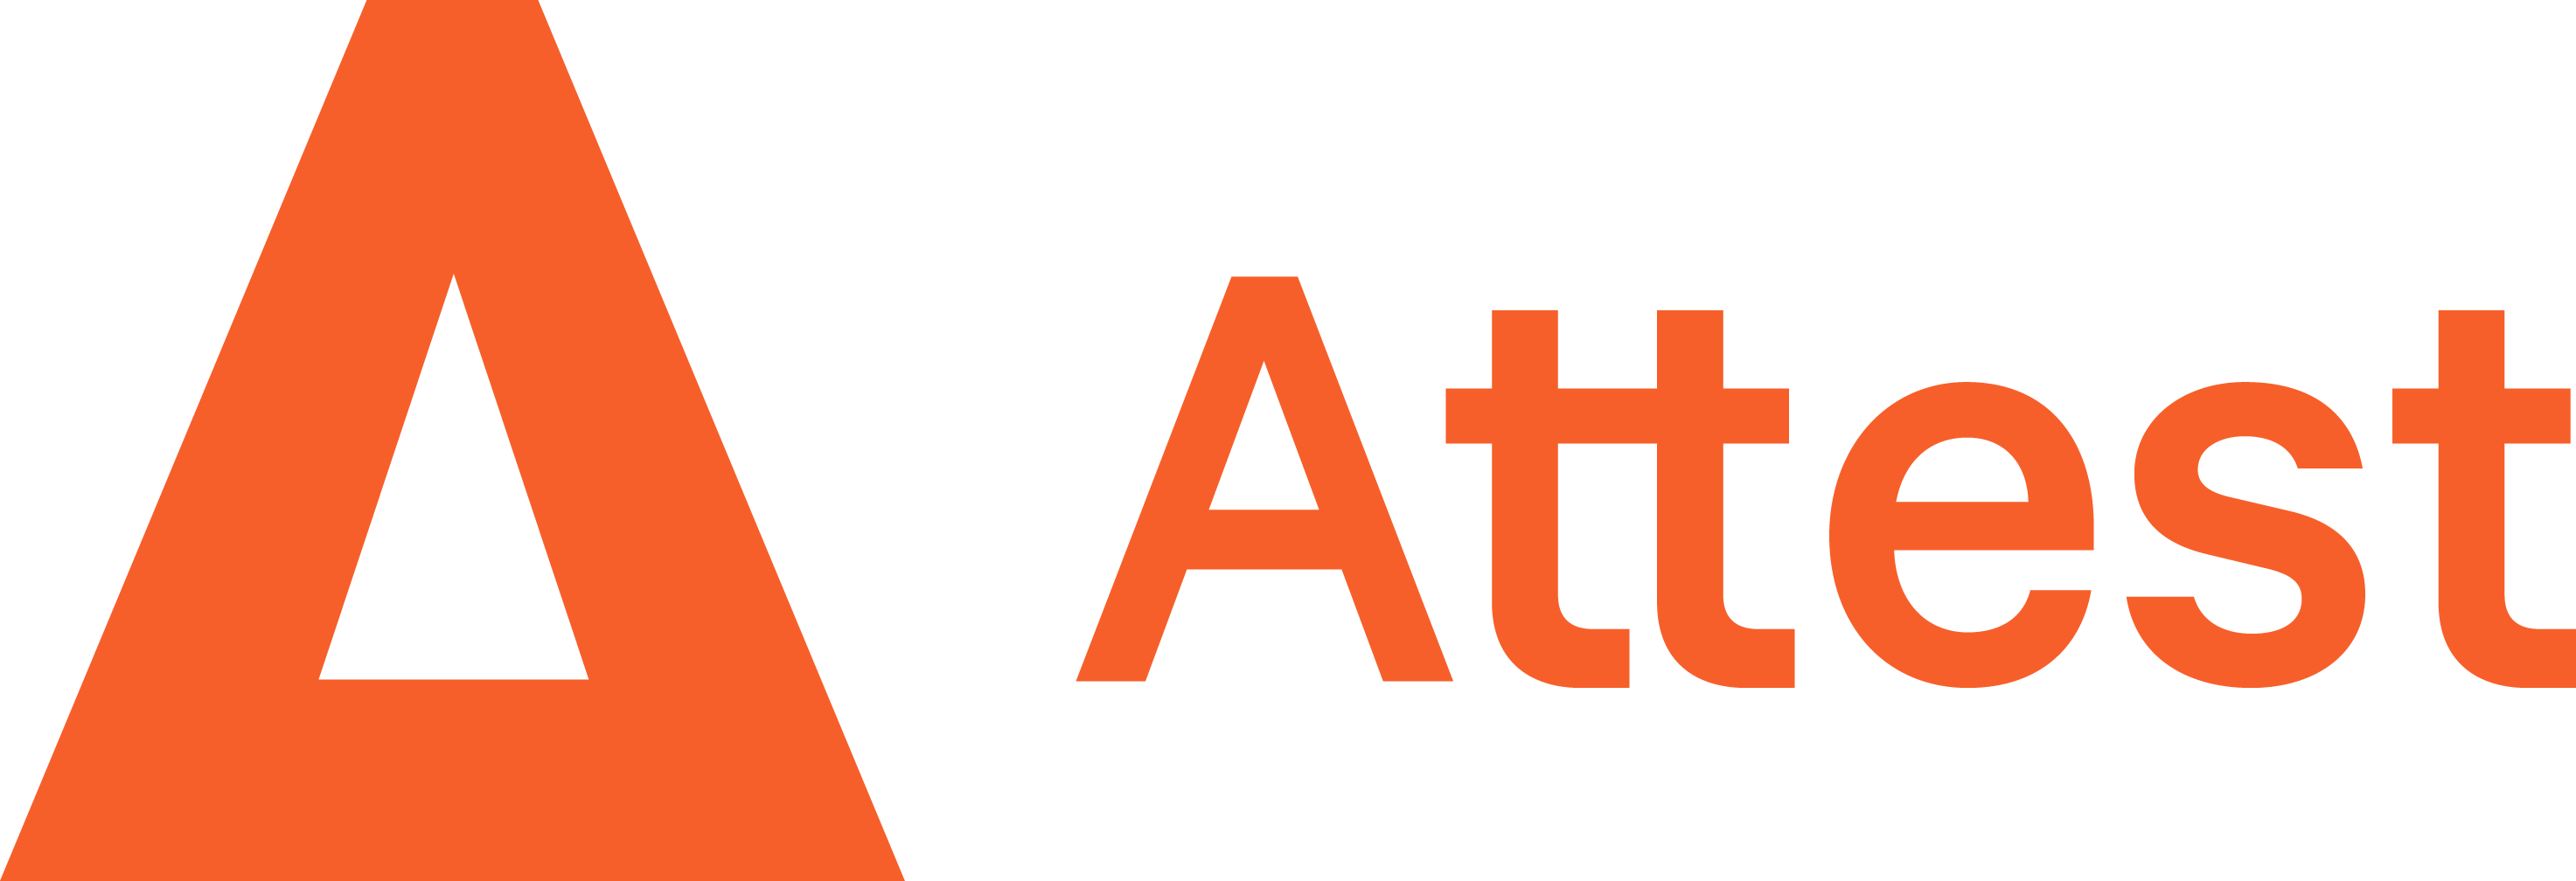 Attest company logo